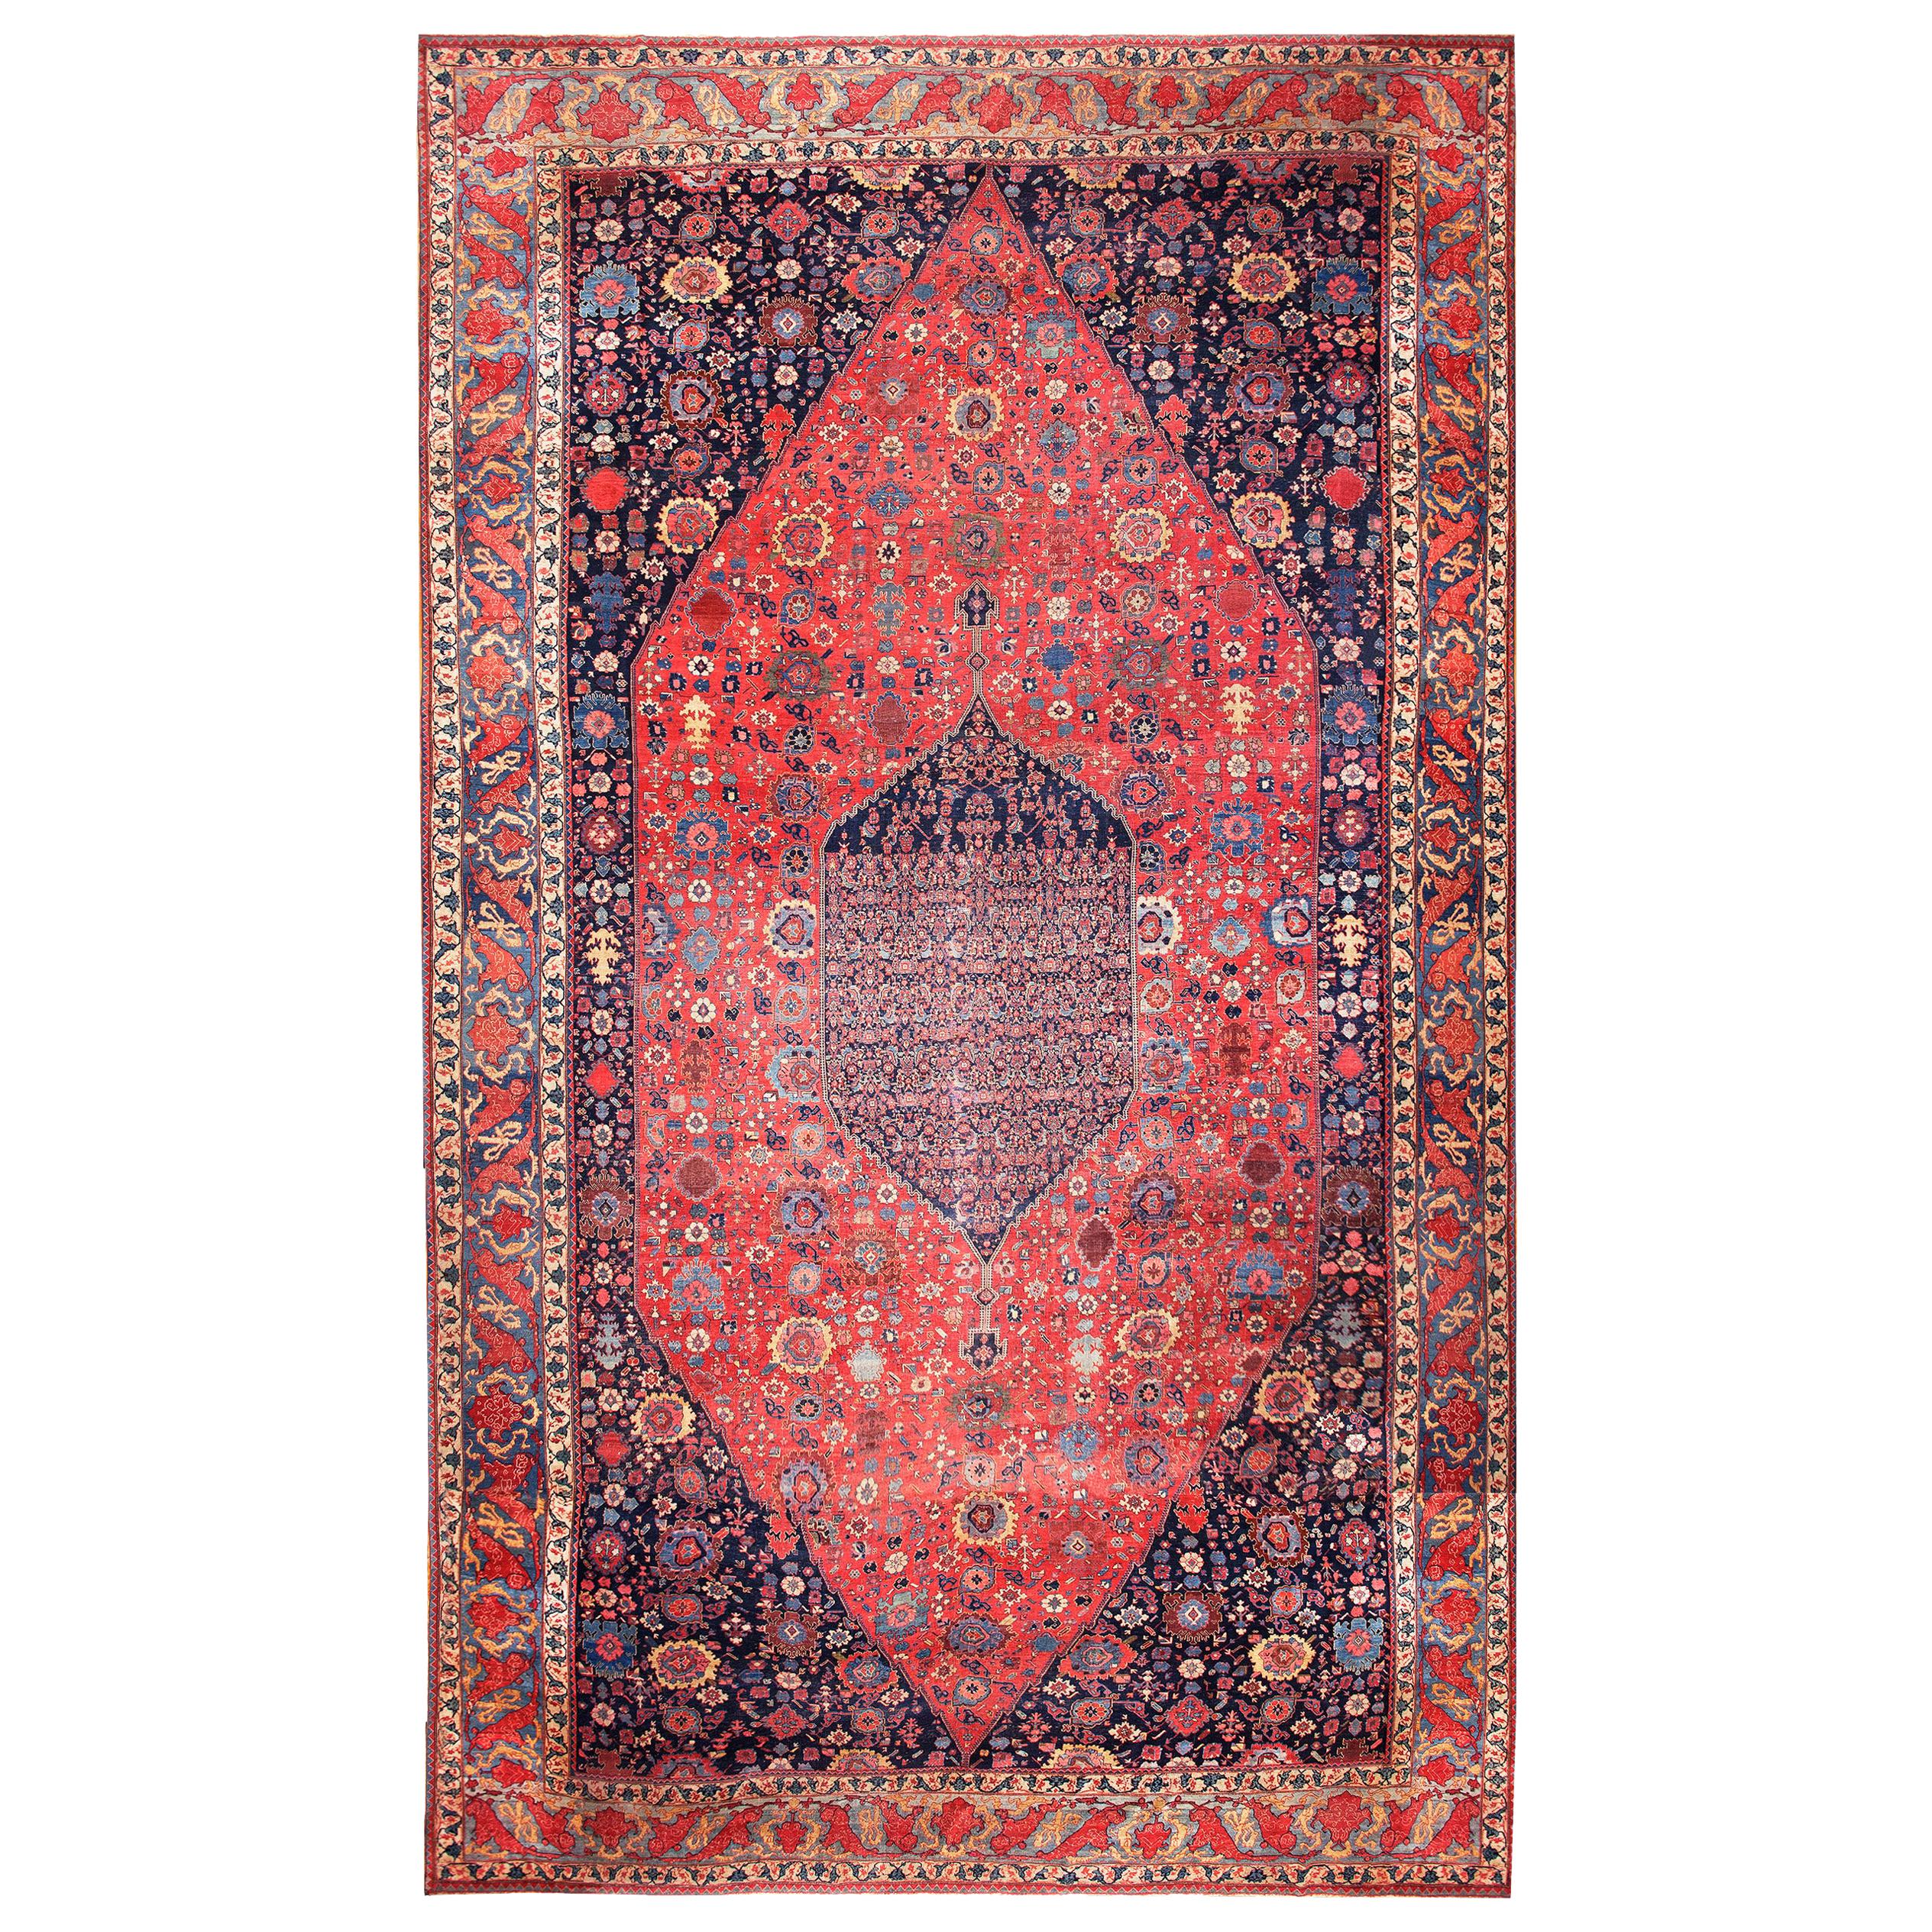 19th Century W. Persian Bijar Carpet ( 15'6" x 27'10" - 472 x 848 )